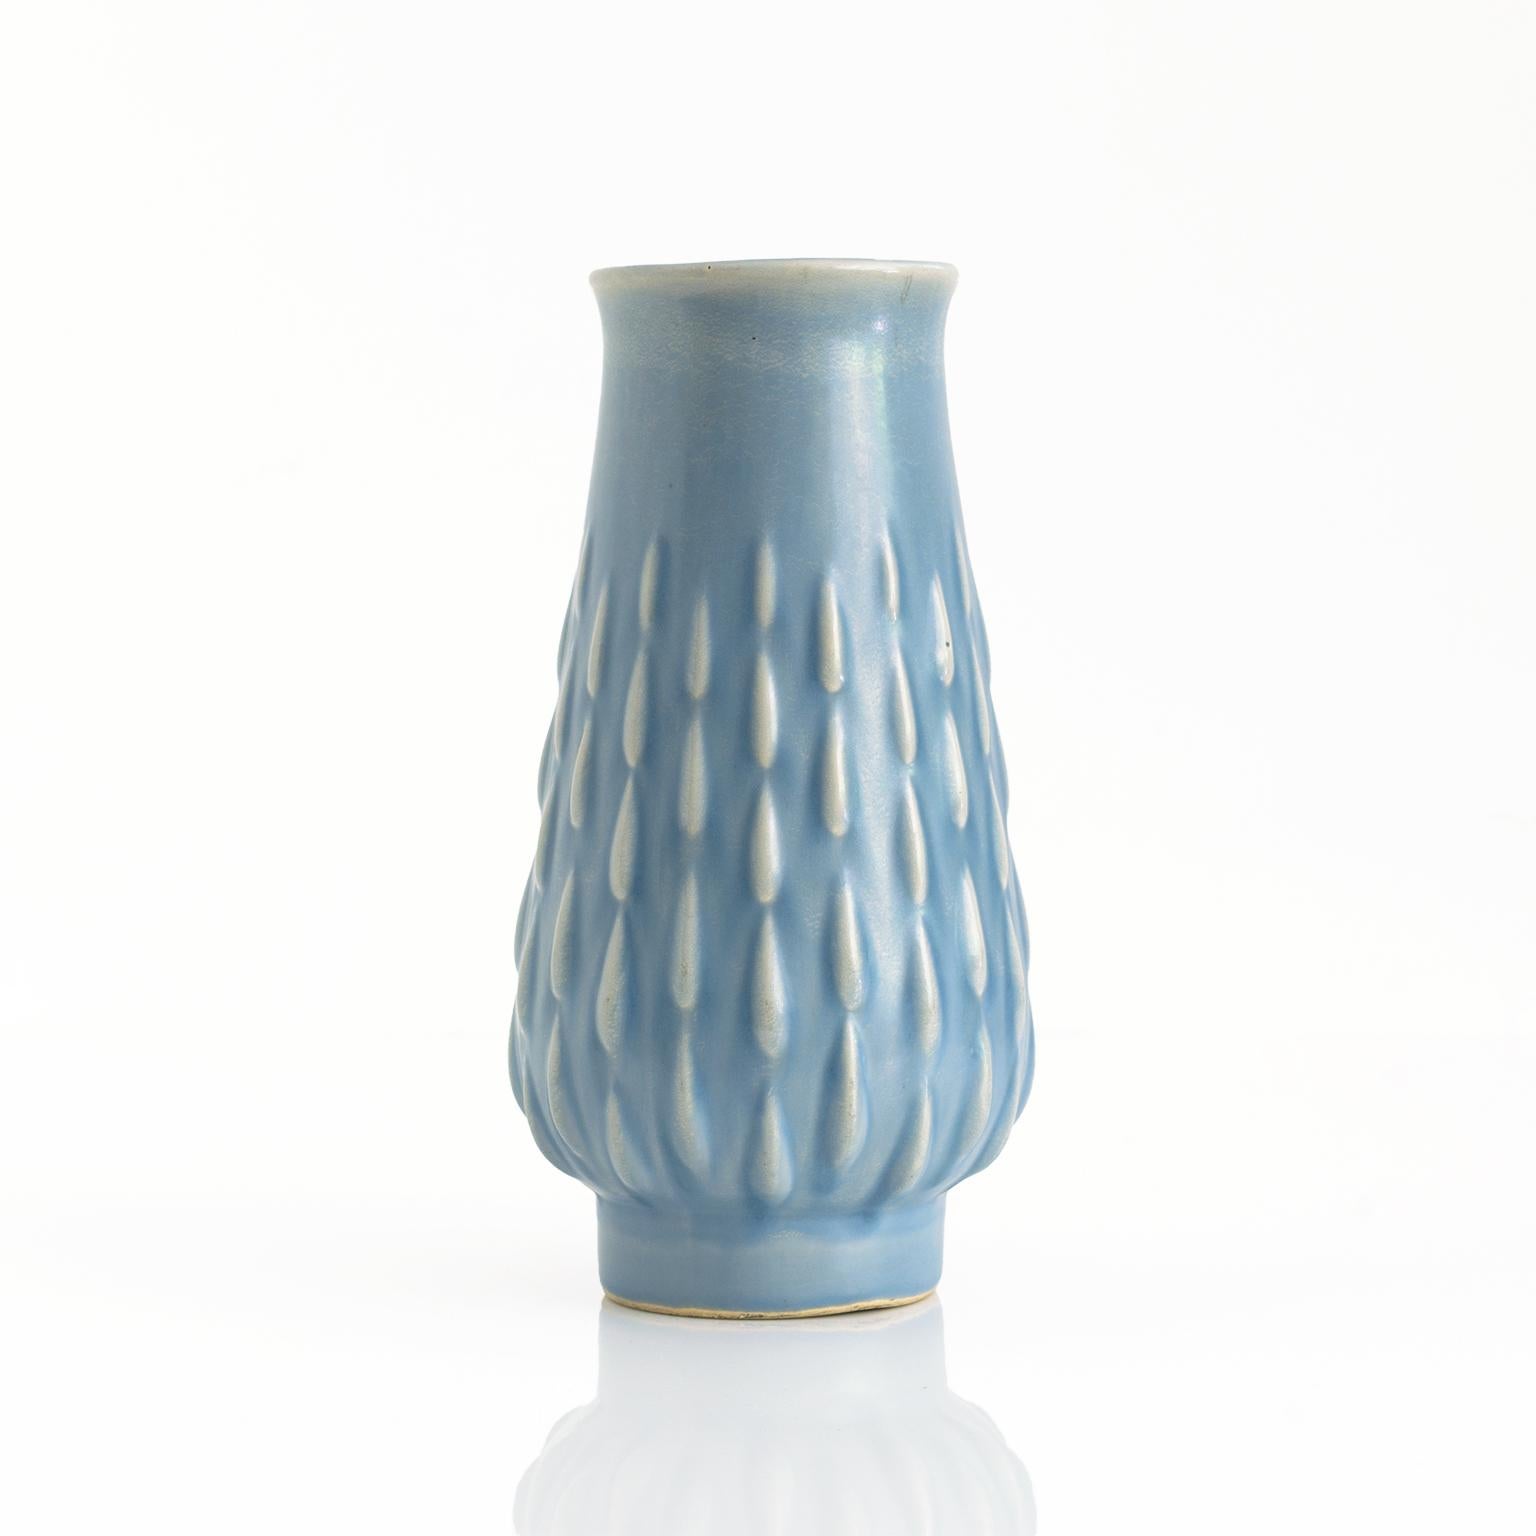 Vase mit Fuß von Ewald Dahlskog, glasiert, blassblau, mit erhabenem Muster. Signiert auf der Unterseite ED mit Herstellermarke für Bo Fajans. In Schweden hergestellt, ca. Ende der 1930er Jahre. 

Maße: Höhe: 8, Durchmesser: 4,25.